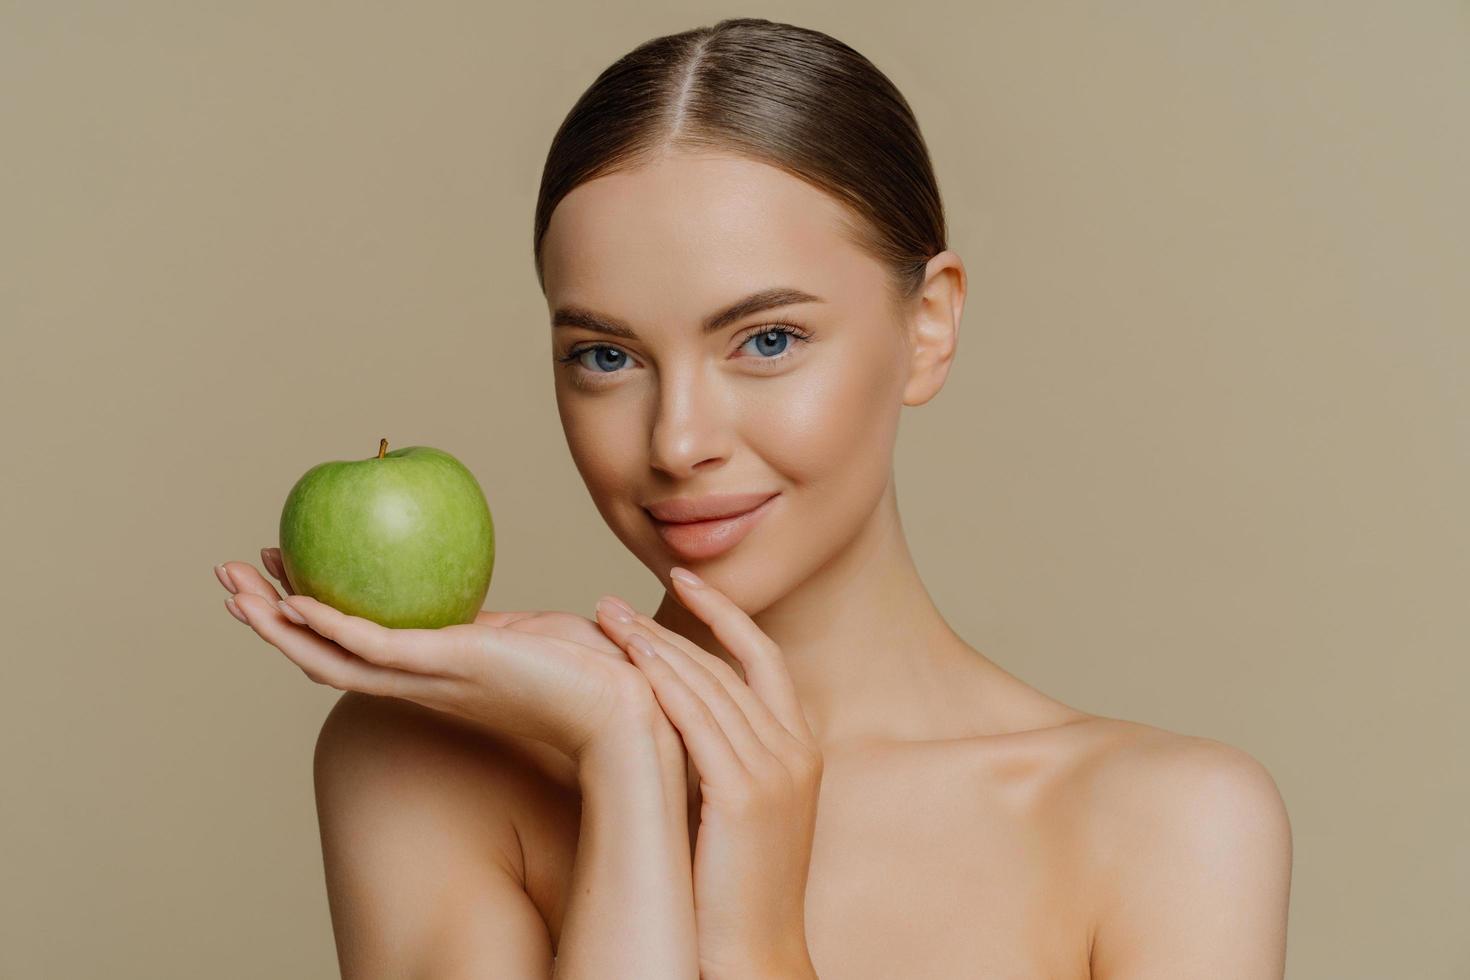 photo d'une jeune femme brune torse nu aux cheveux peignés tenant une pomme verte fraîche utilise des cosmétiques naturels a des épaules nues isolées sur fond marron. concept de soins du corps cosmétologie personnes